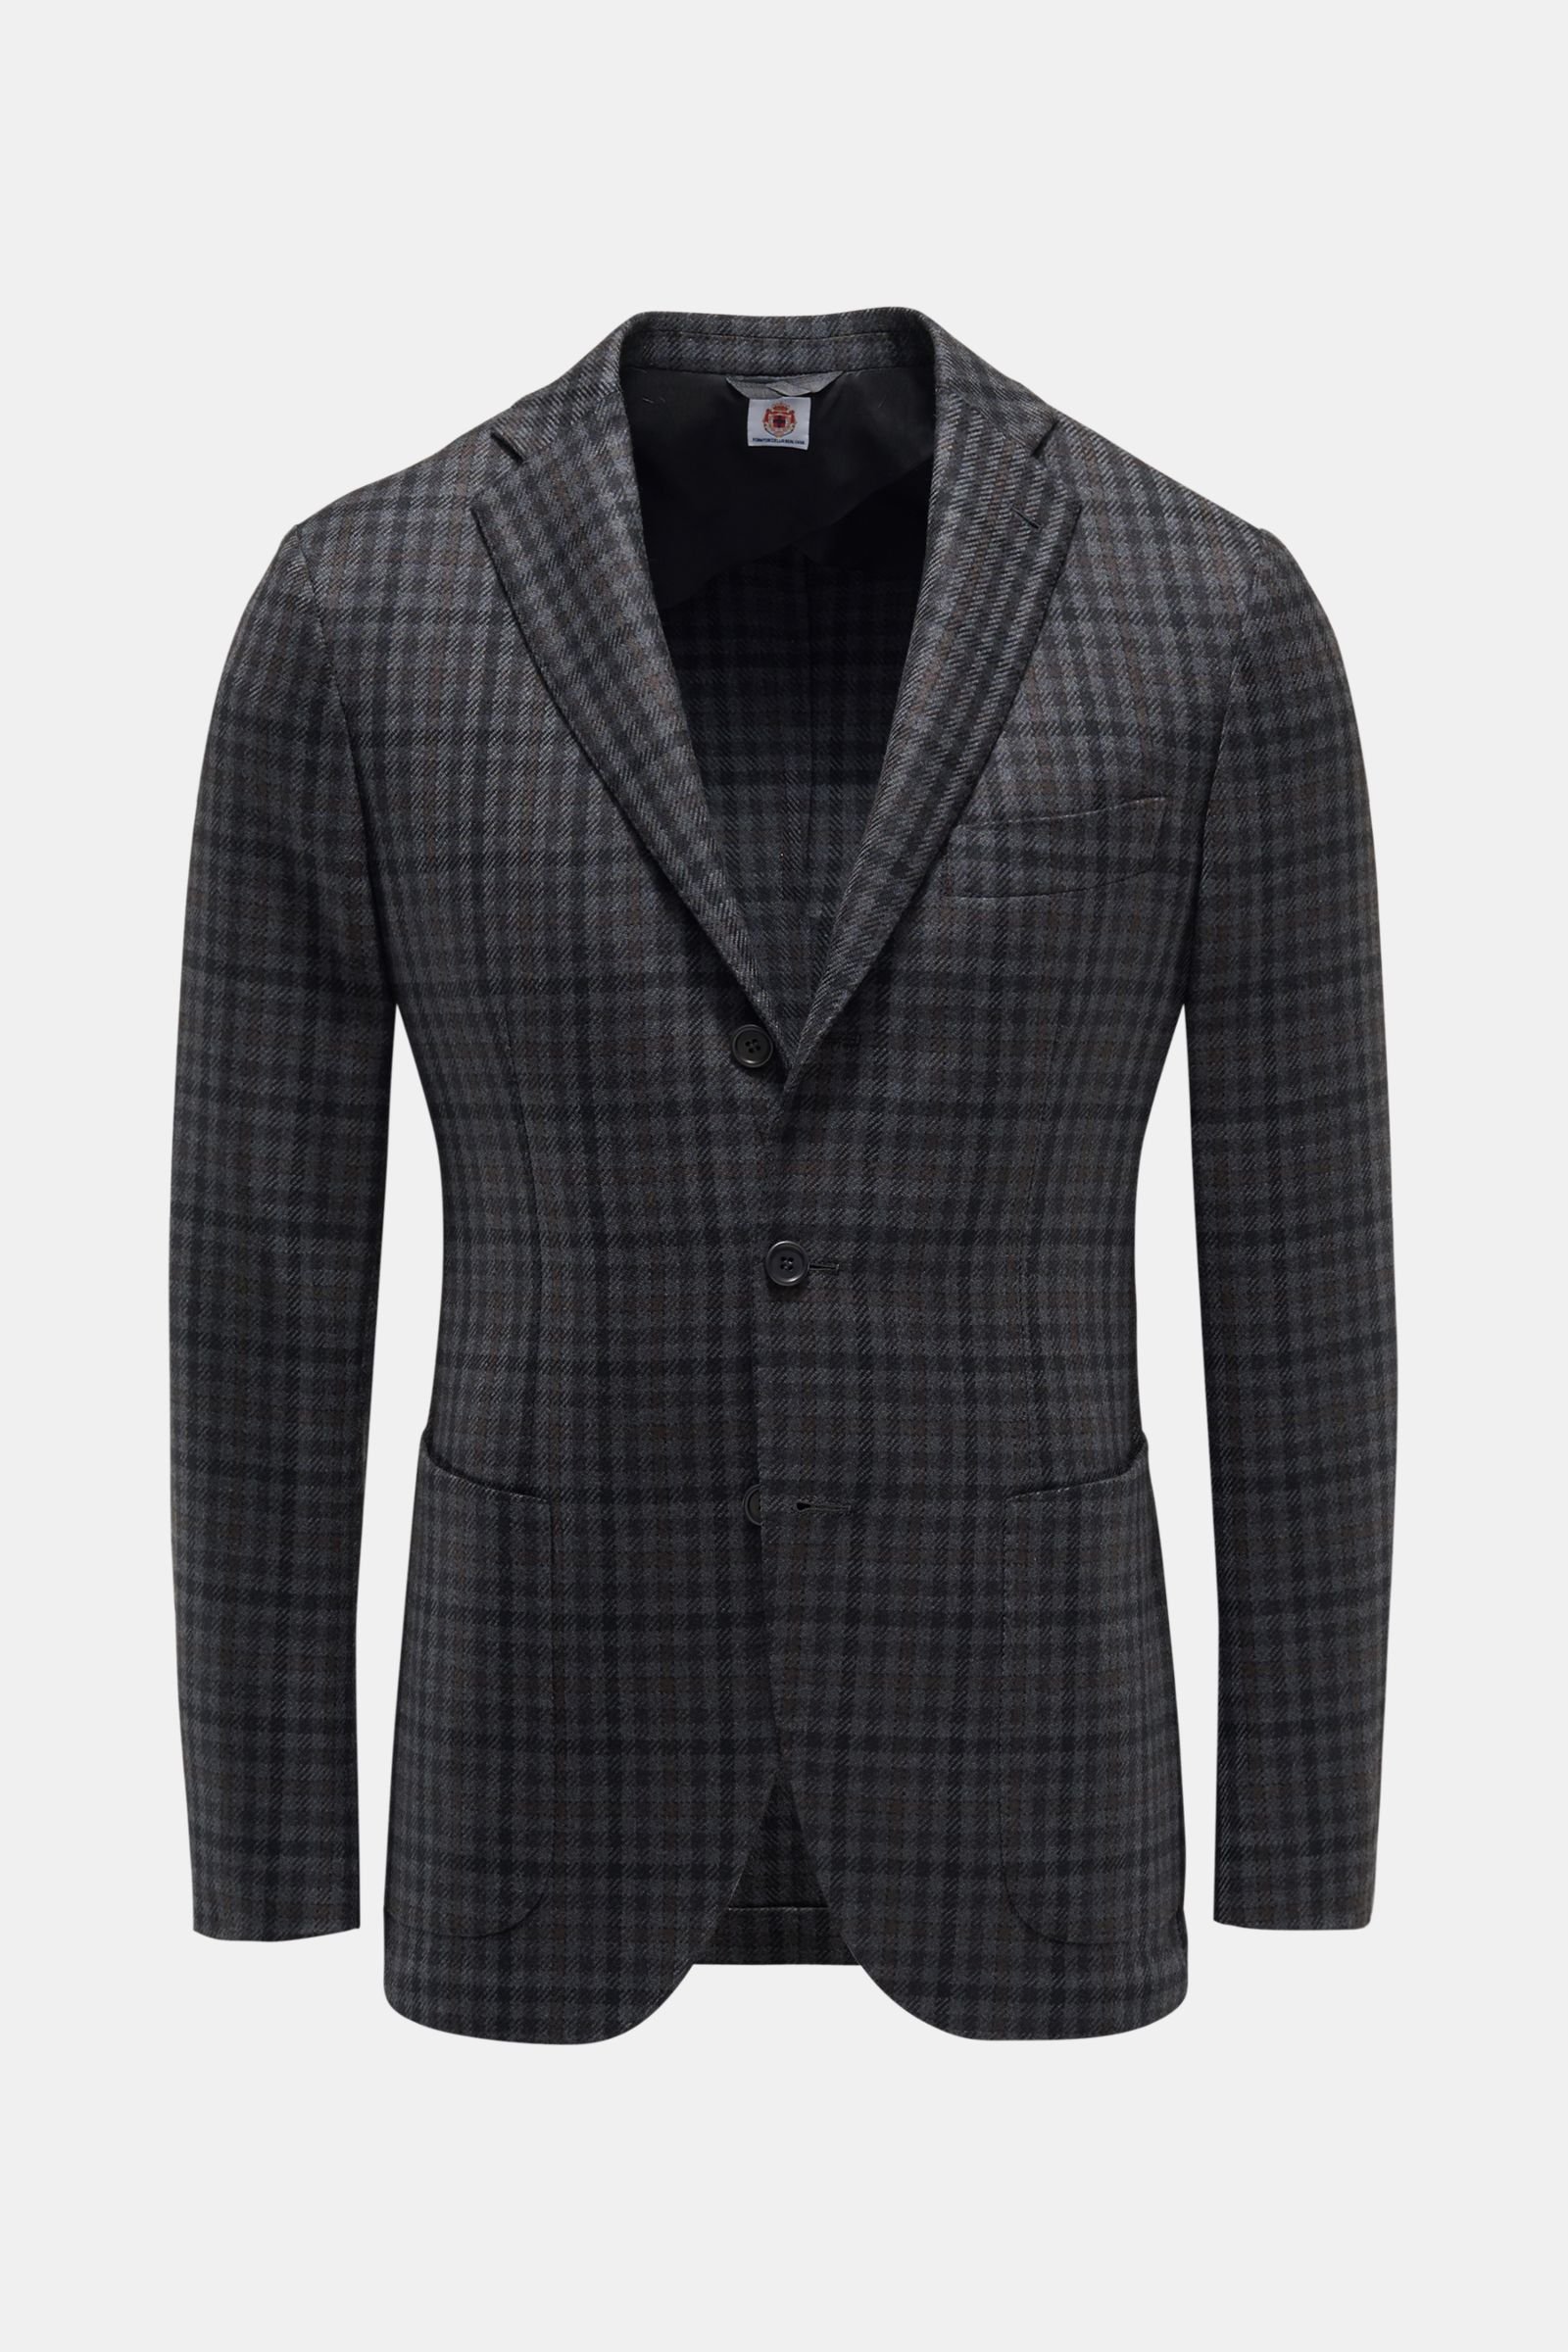 Smart-casual jacket 'Sorrento' dark grey checked